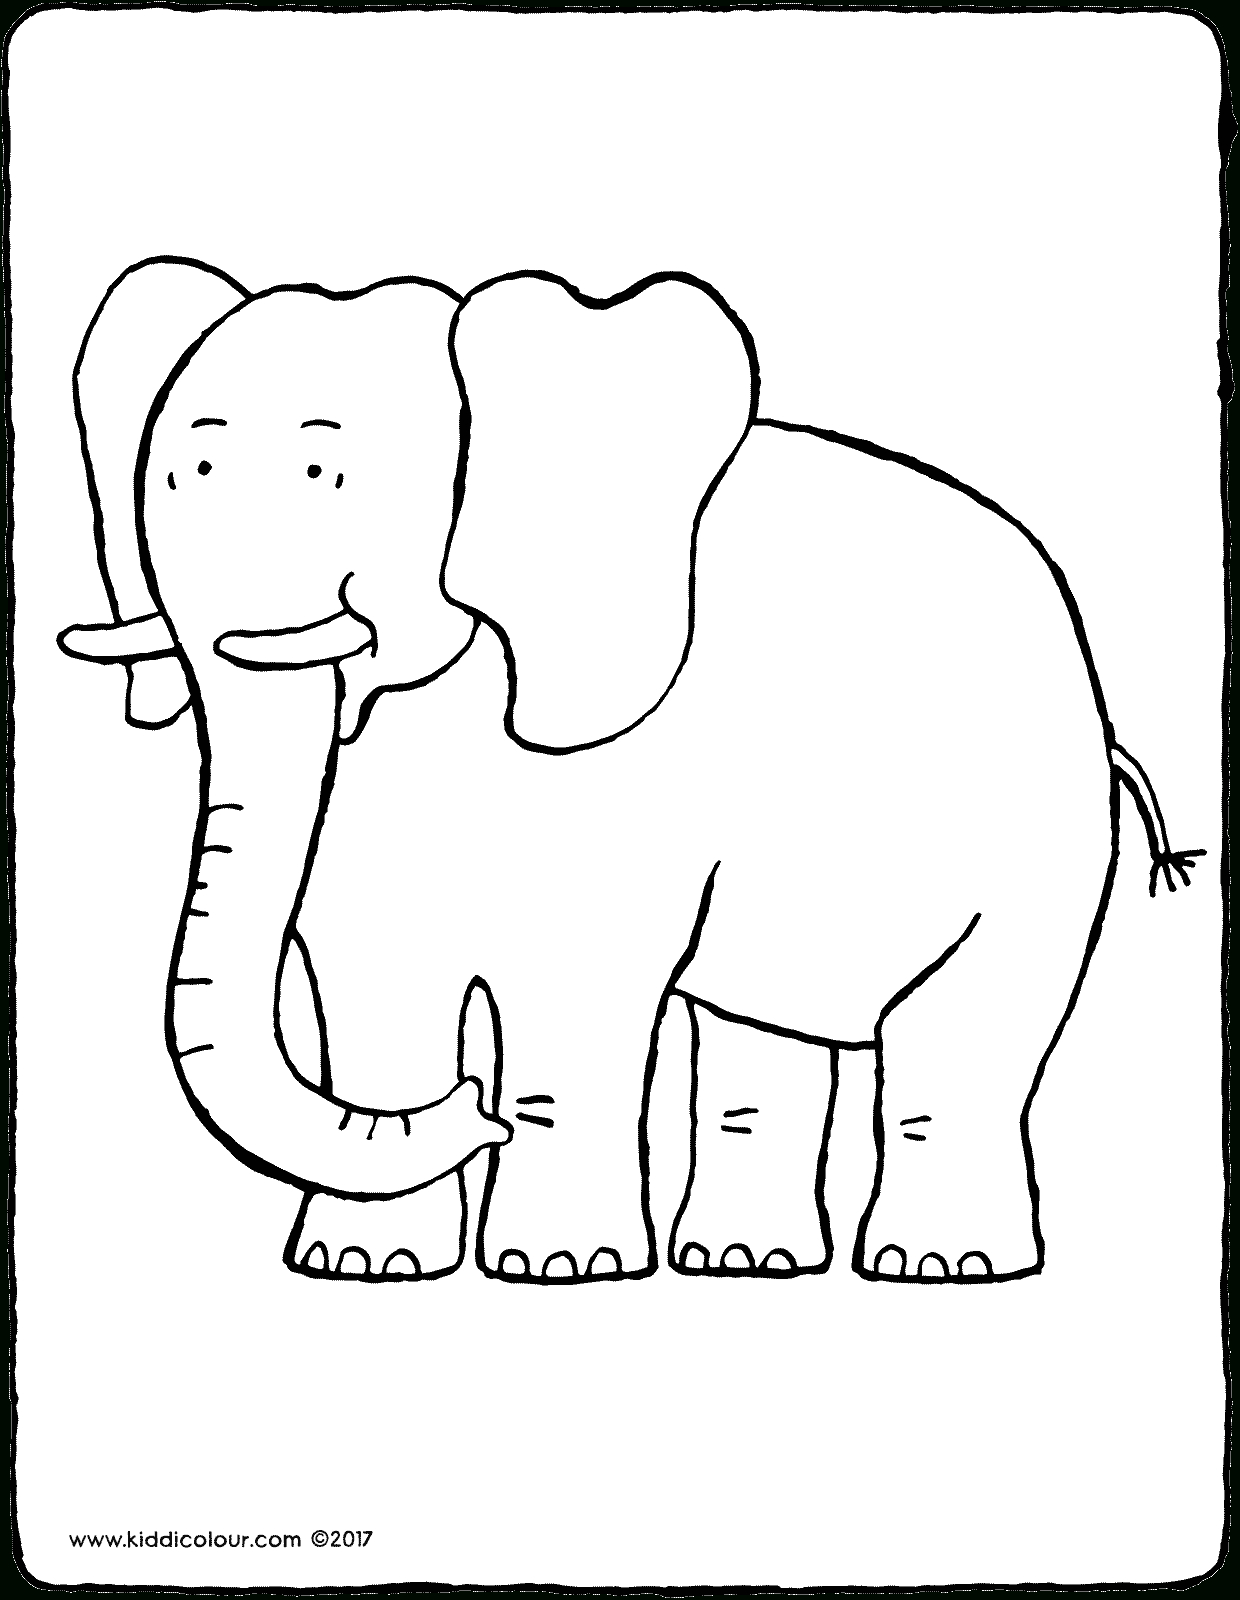 Éléphant - Kiddicolour pour Coloriage Elephant